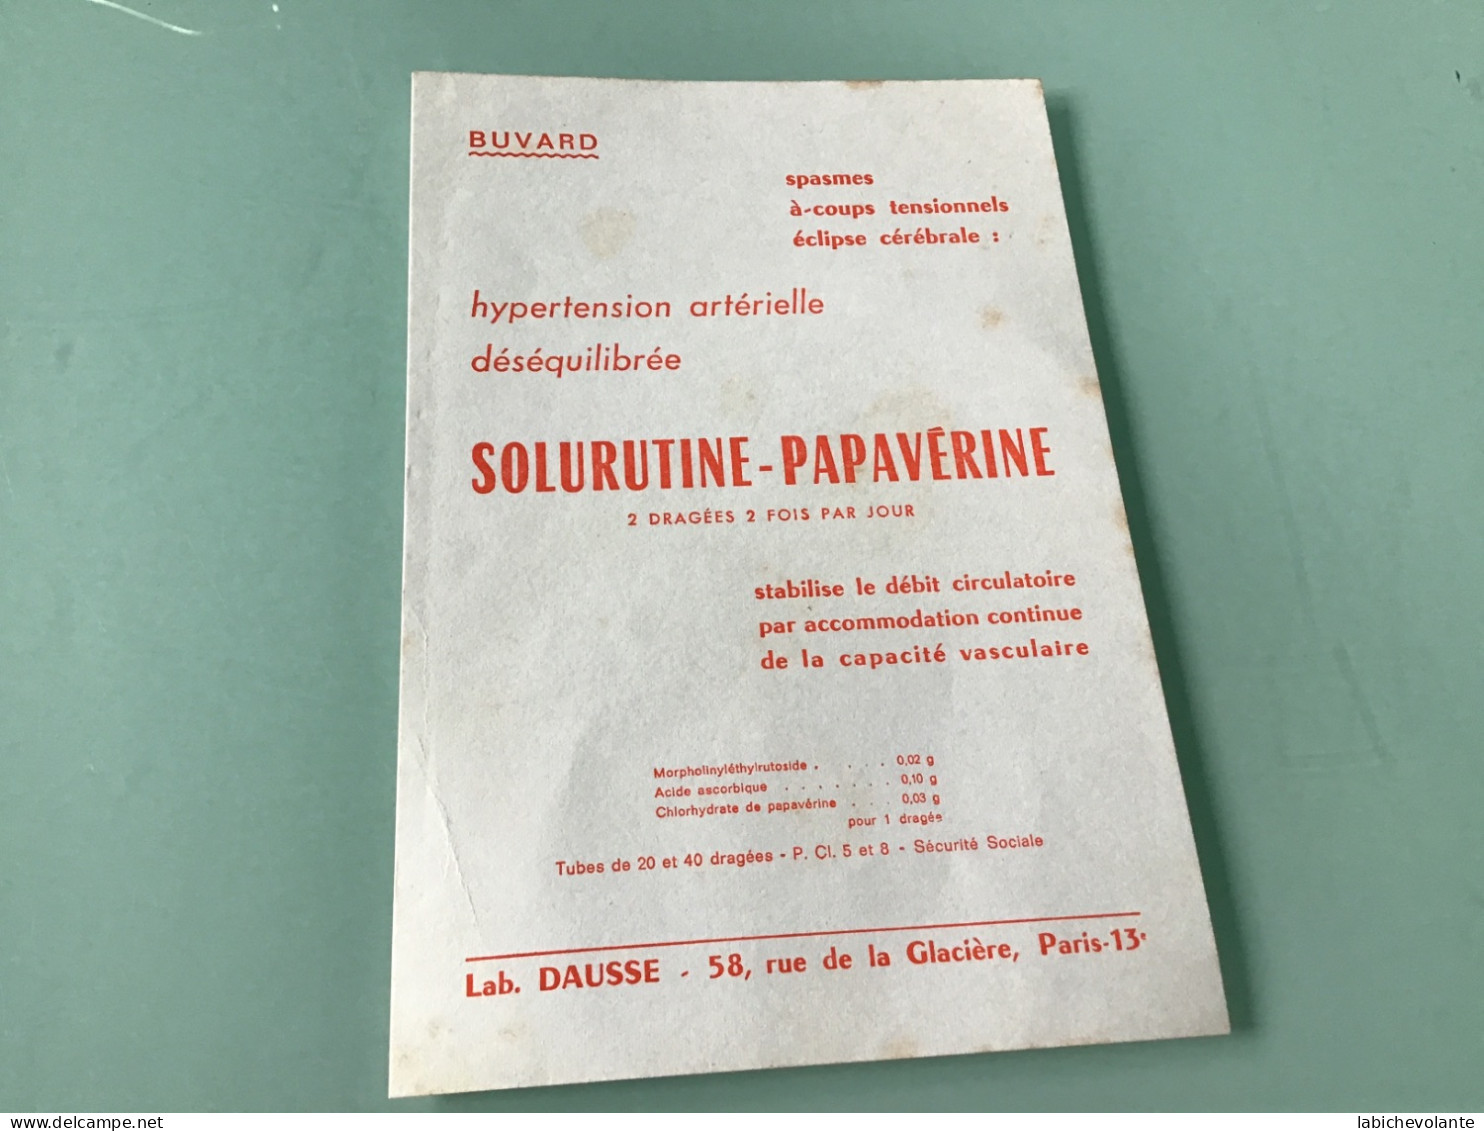 Buvard  - SOLURUTINE-PAPAVÉRINE - Chemist's